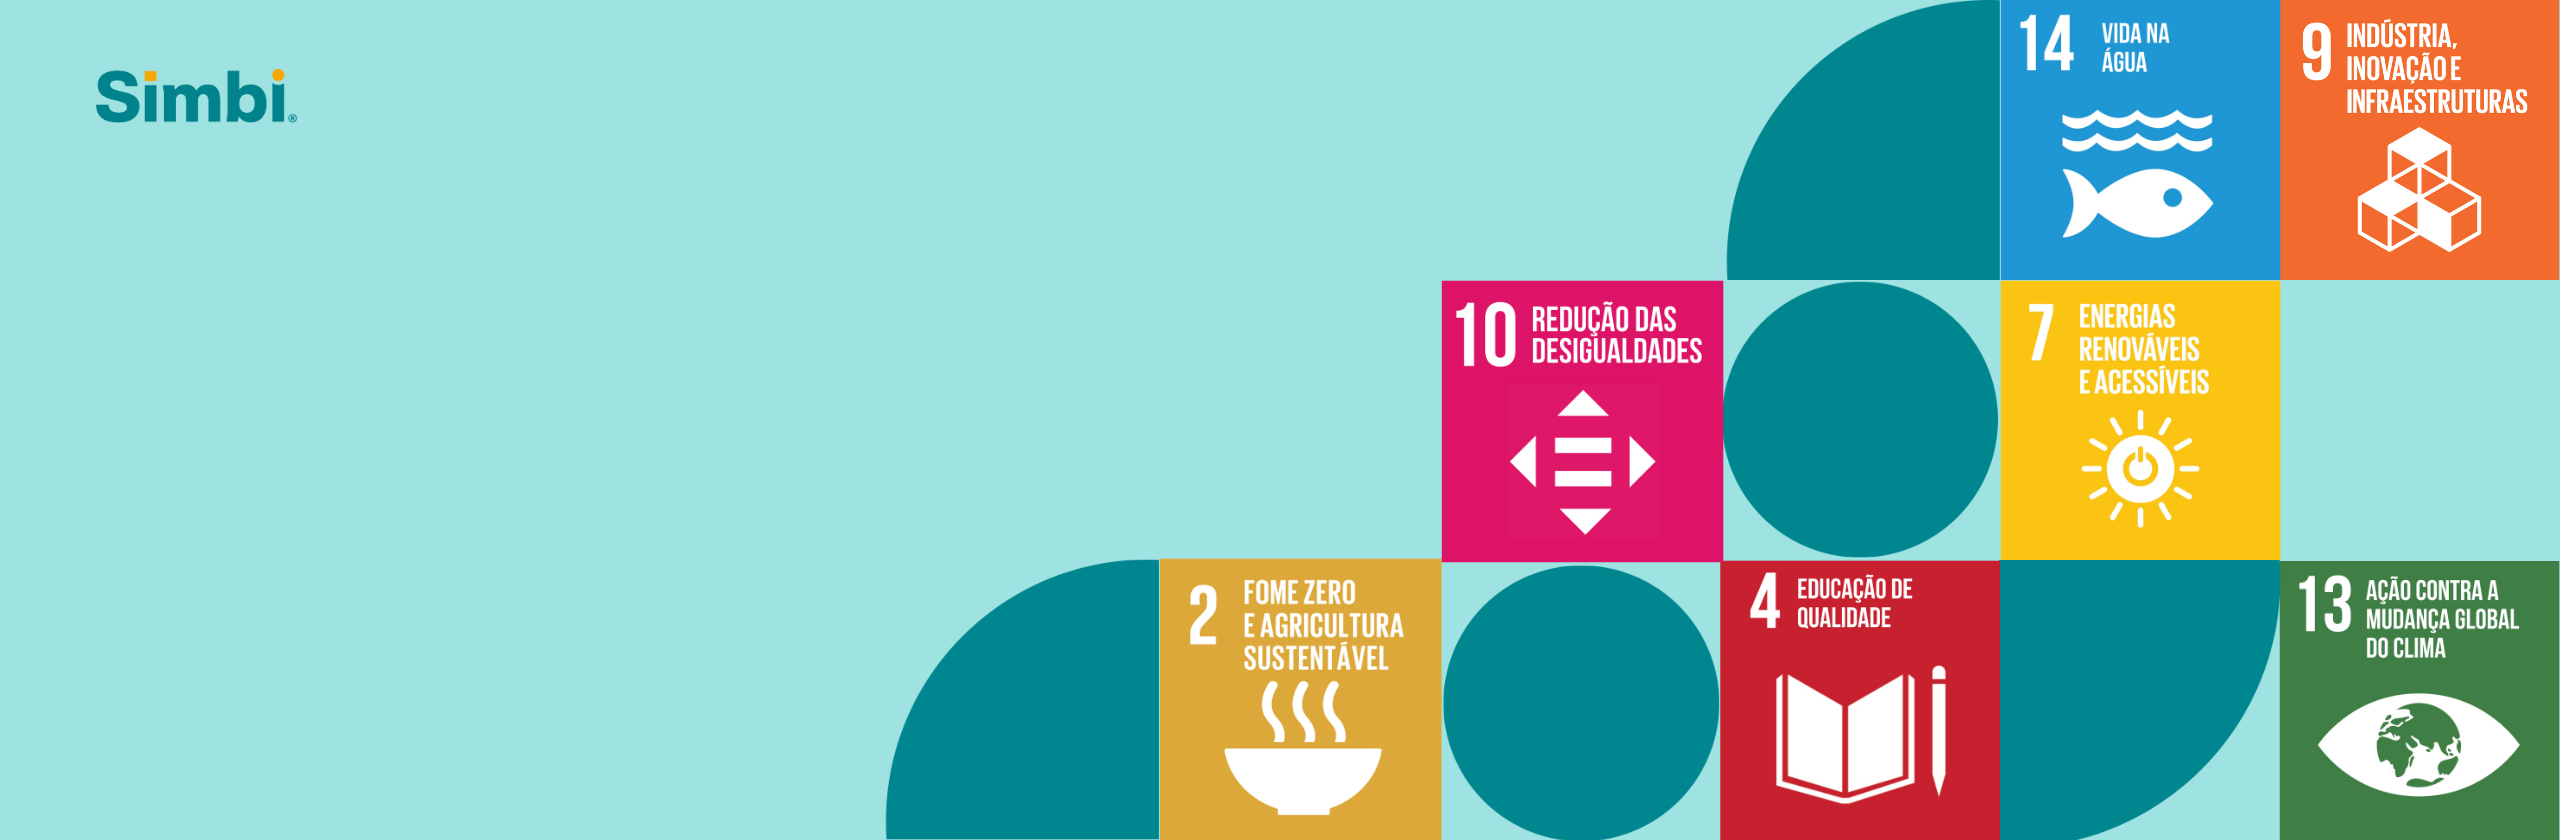 Os Objetivos de Desenvolvimento Sustentável, também conhecidos pela sigla ODS, fazem parte da Agenda 2030 da Organização das Nações Unidas (ONU) que visa a construção de um mundo mais justo e igualitário.